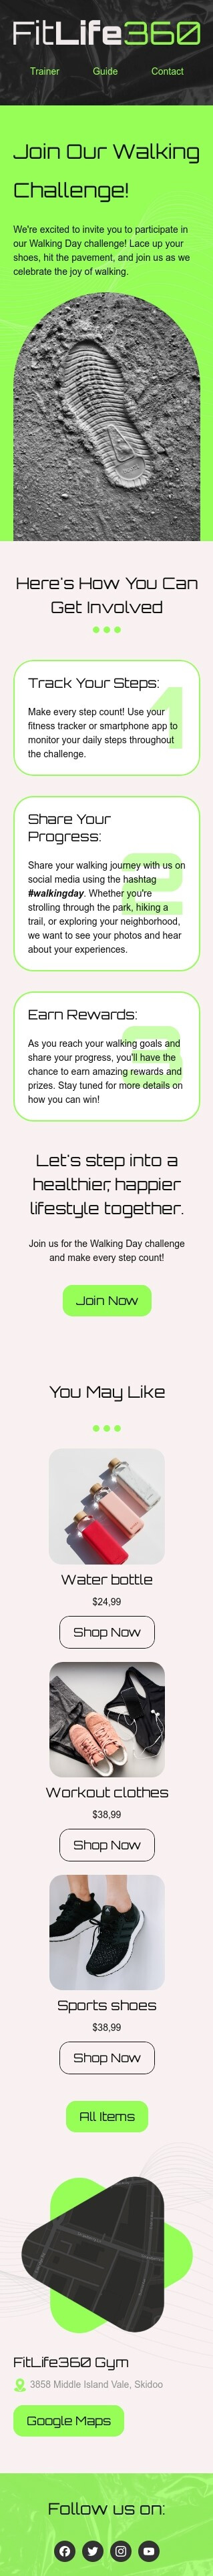 Шаблон листа до свята День ходьби «Приєднуйтесь до нашого Walking Challenge» для індустрії «Спорт» мобільний вигляд